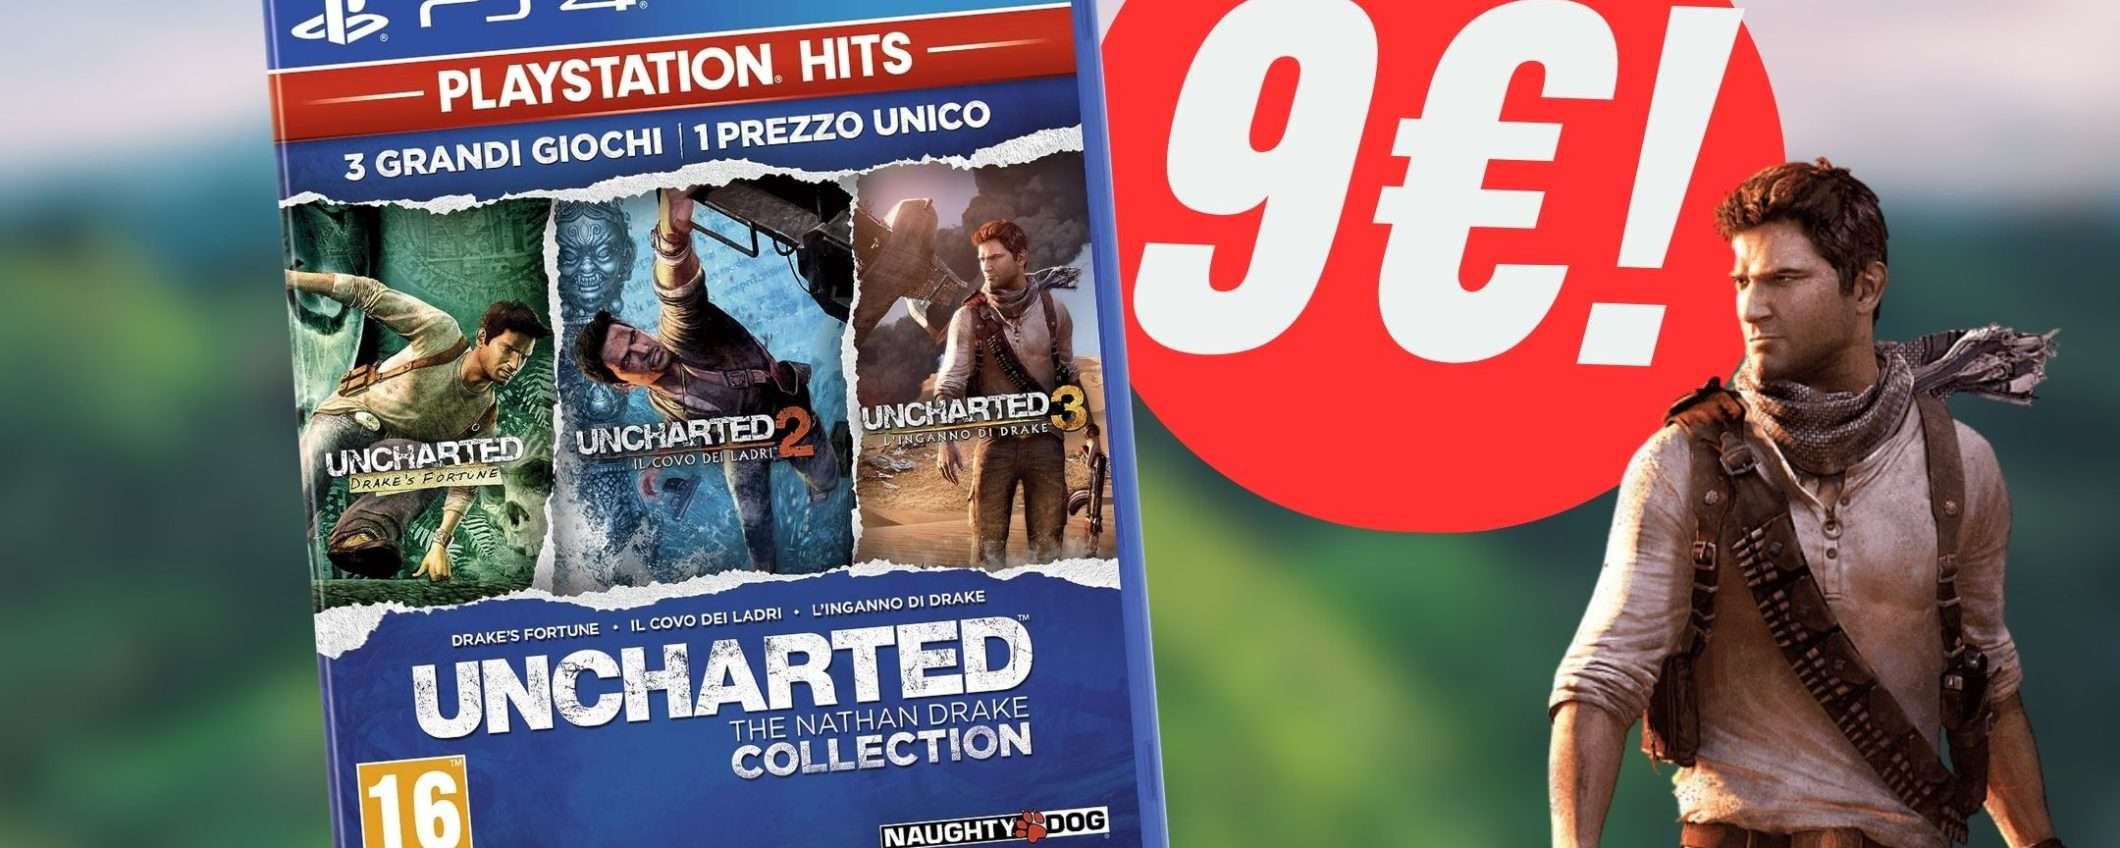 La Uncharted Collection per PS4 ti farà giocare la trilogia per soli 9€!